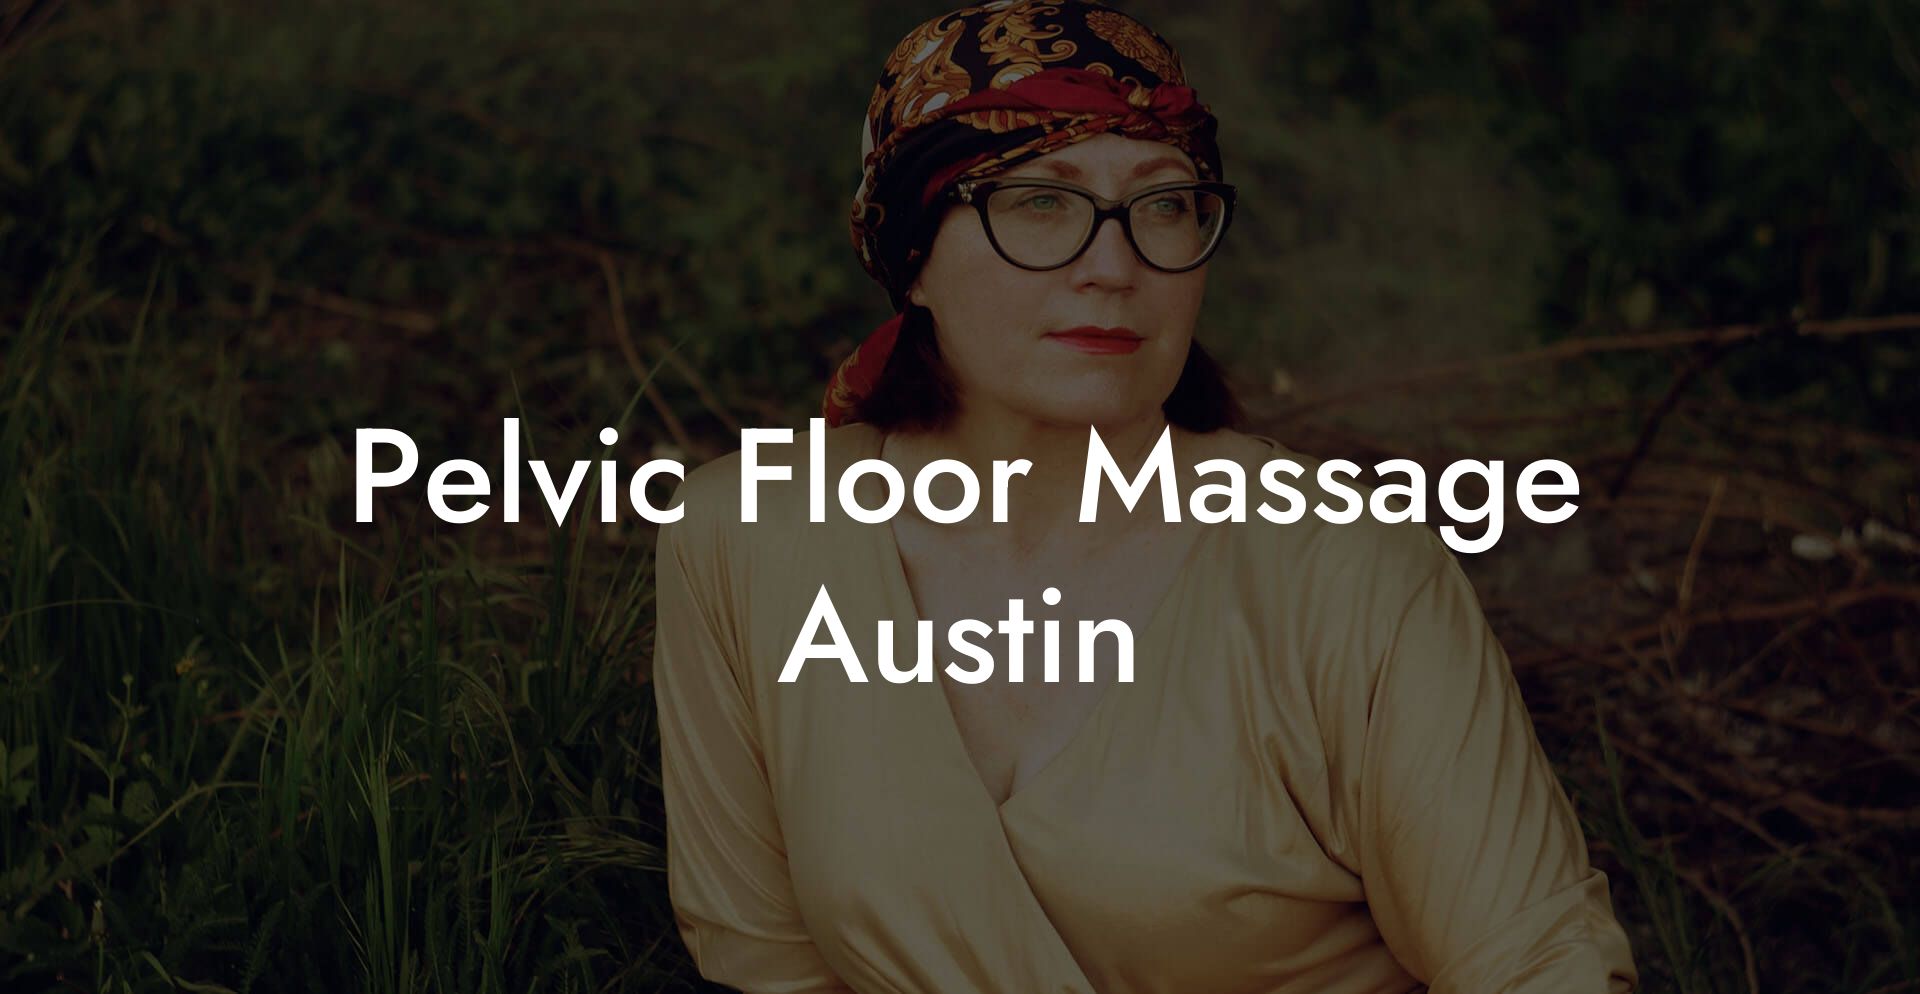 Pelvic Floor Massage Austin